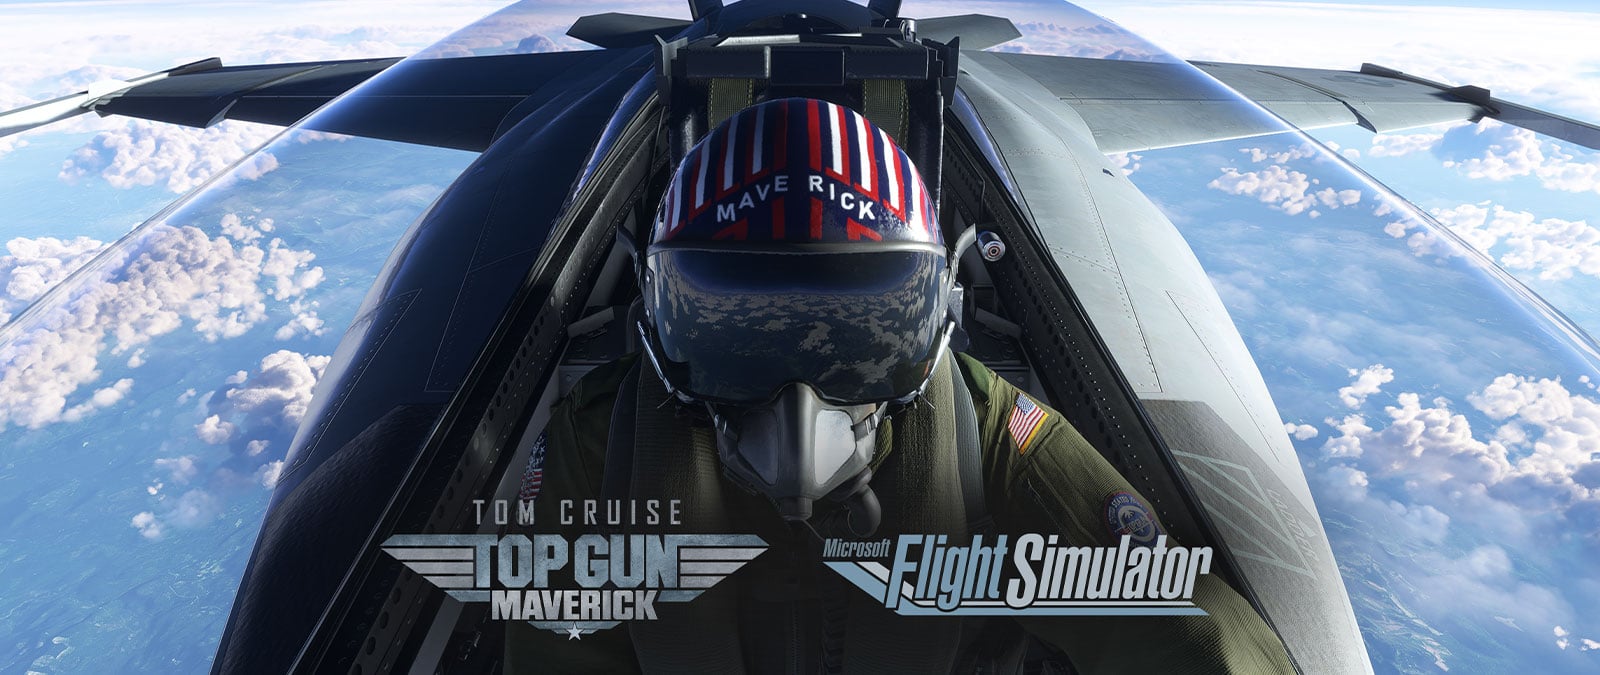 Microsoft Flight Simulator - Top Gun: Maverick